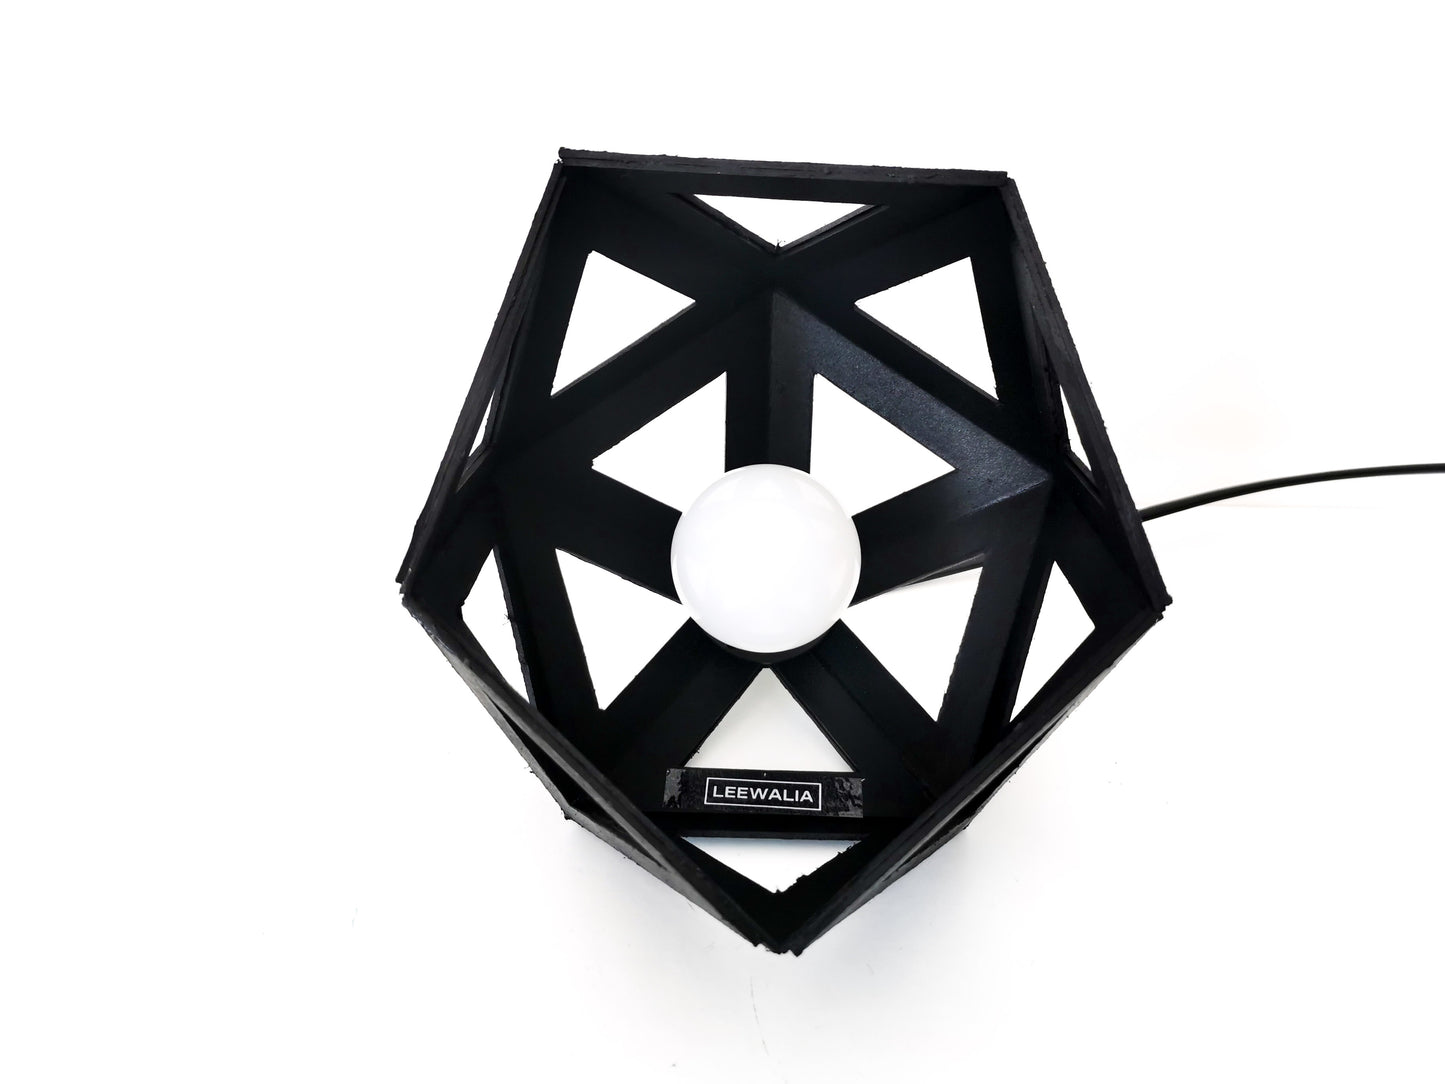 Une Lampe à Poser Noir créée à partir d'un design inspiré de l'origami.